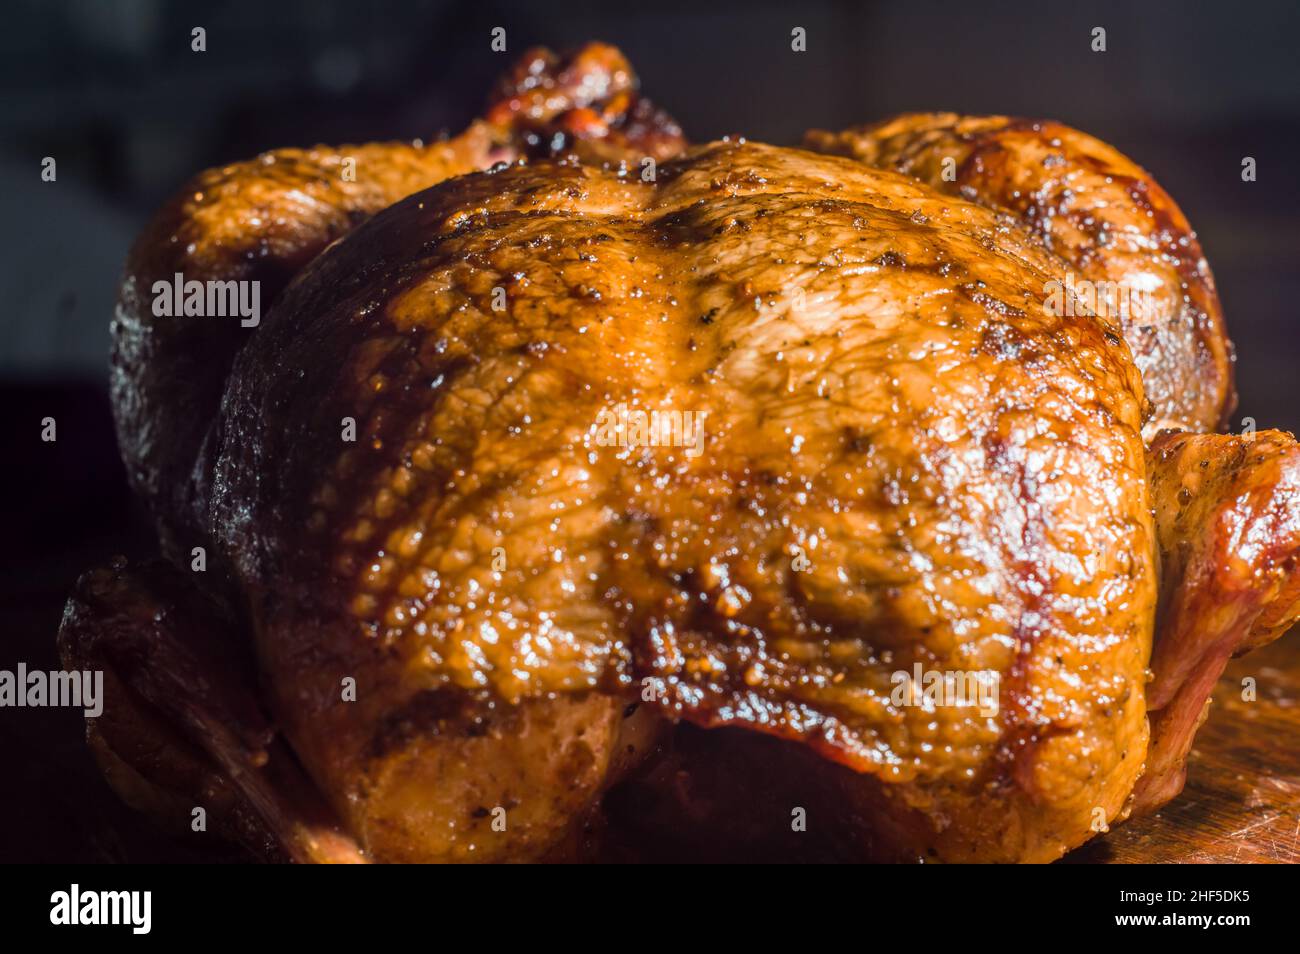 arrostire il pollo con la pelle dorata, copiare lo spazio e tagliare il pollo con un coltello Foto Stock